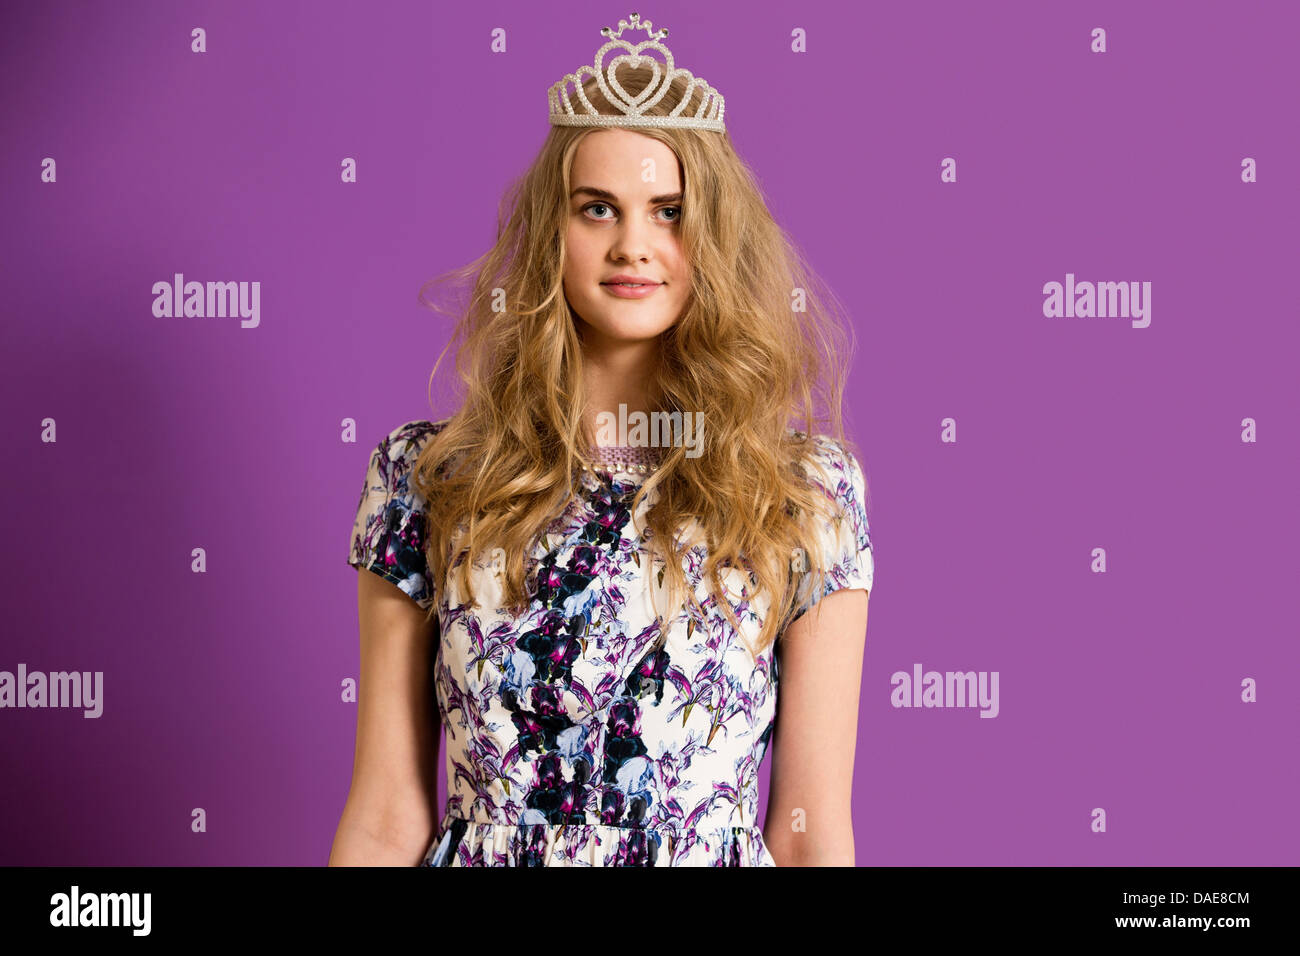 Young woman wearing tiara Stock Photo